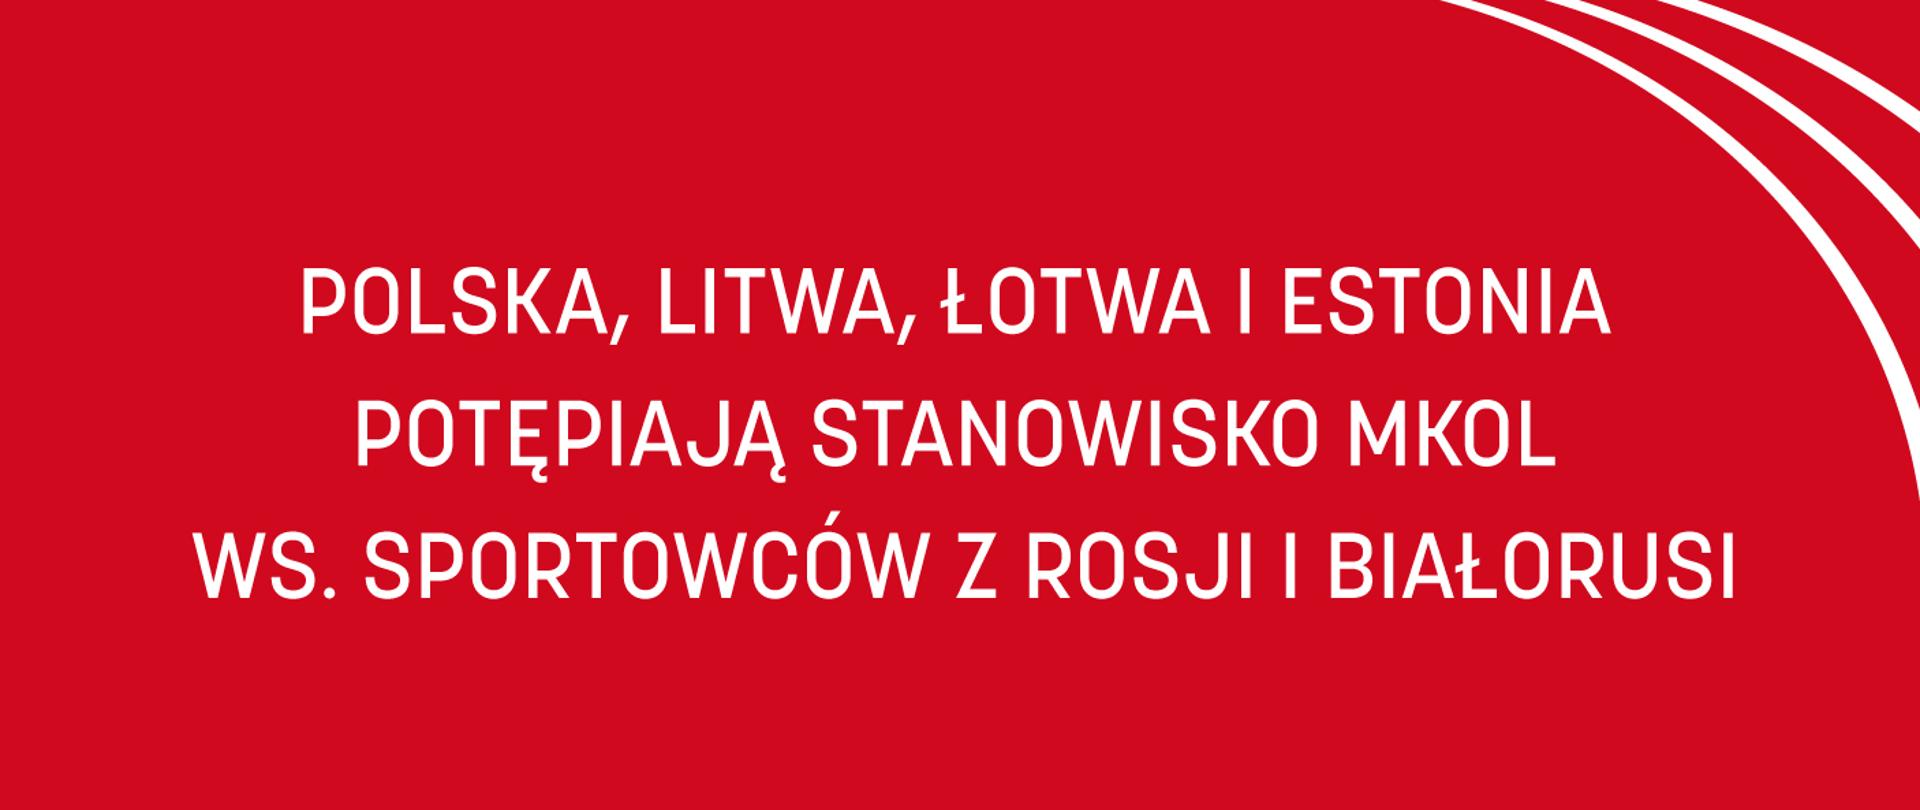 Czerwona plansza z białym napisem Polska, Litwa, Łotwa i Estonia potępiają stanowisko MKOl w sprawie sportowców z Rosji i Białorusi